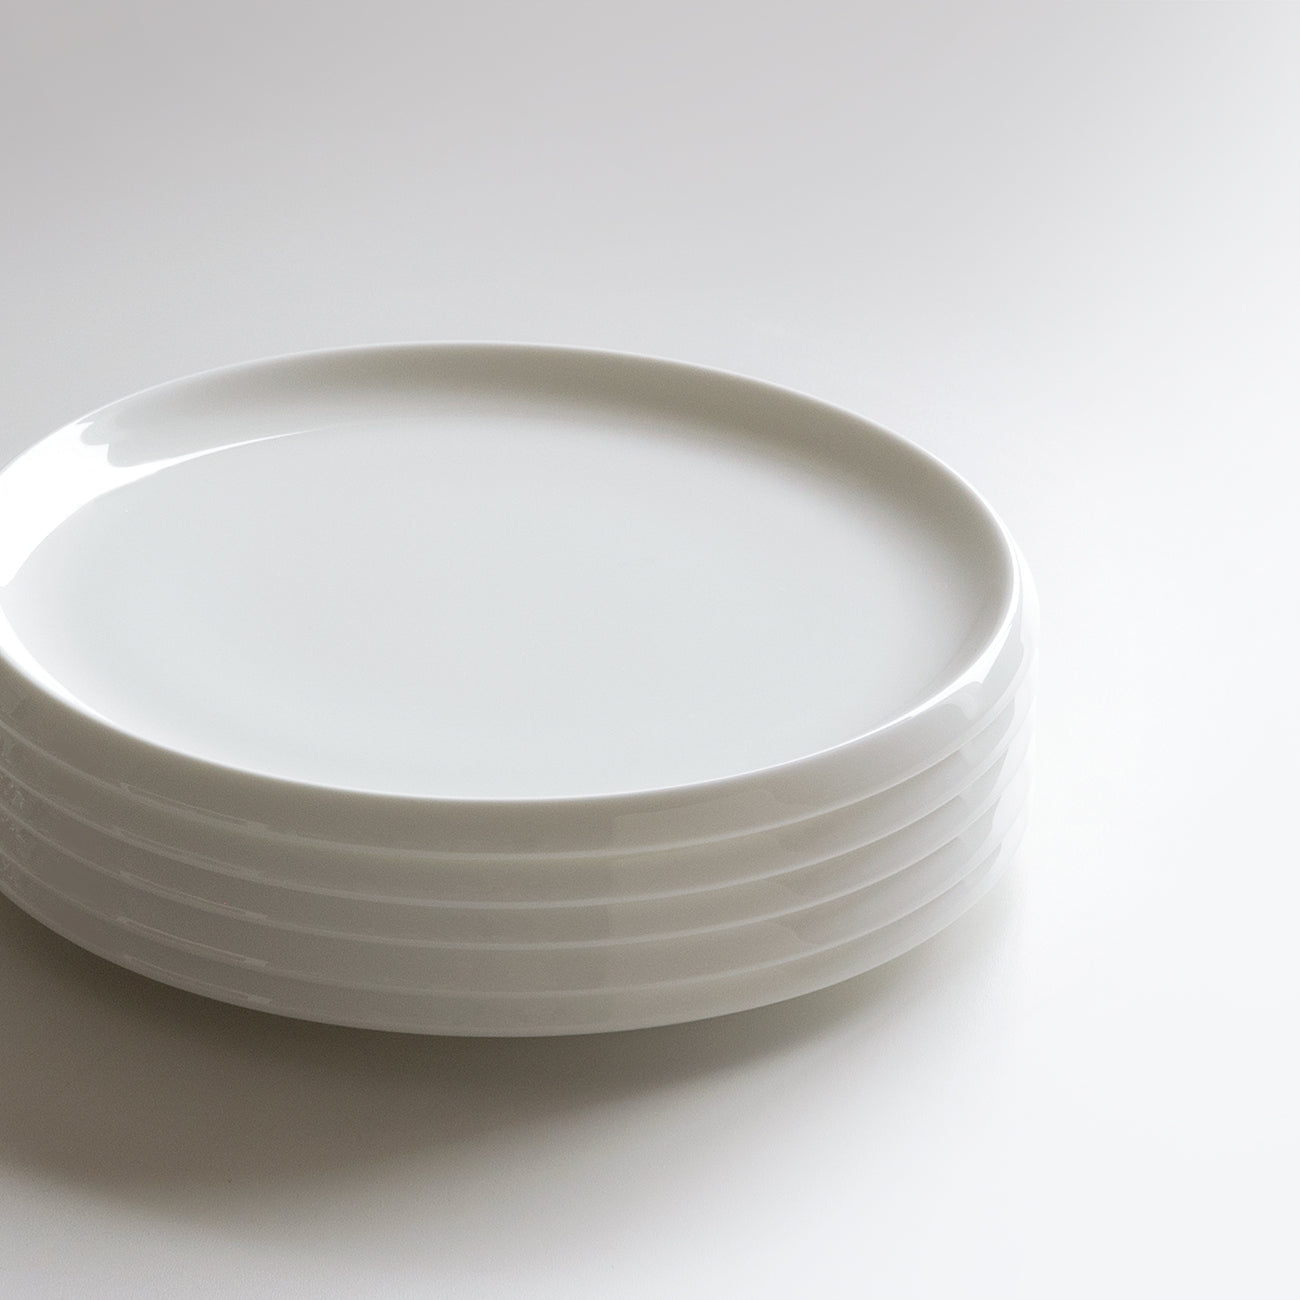 17cmプレート|白い食器|DISK|ニッコー公式オンラインショップ